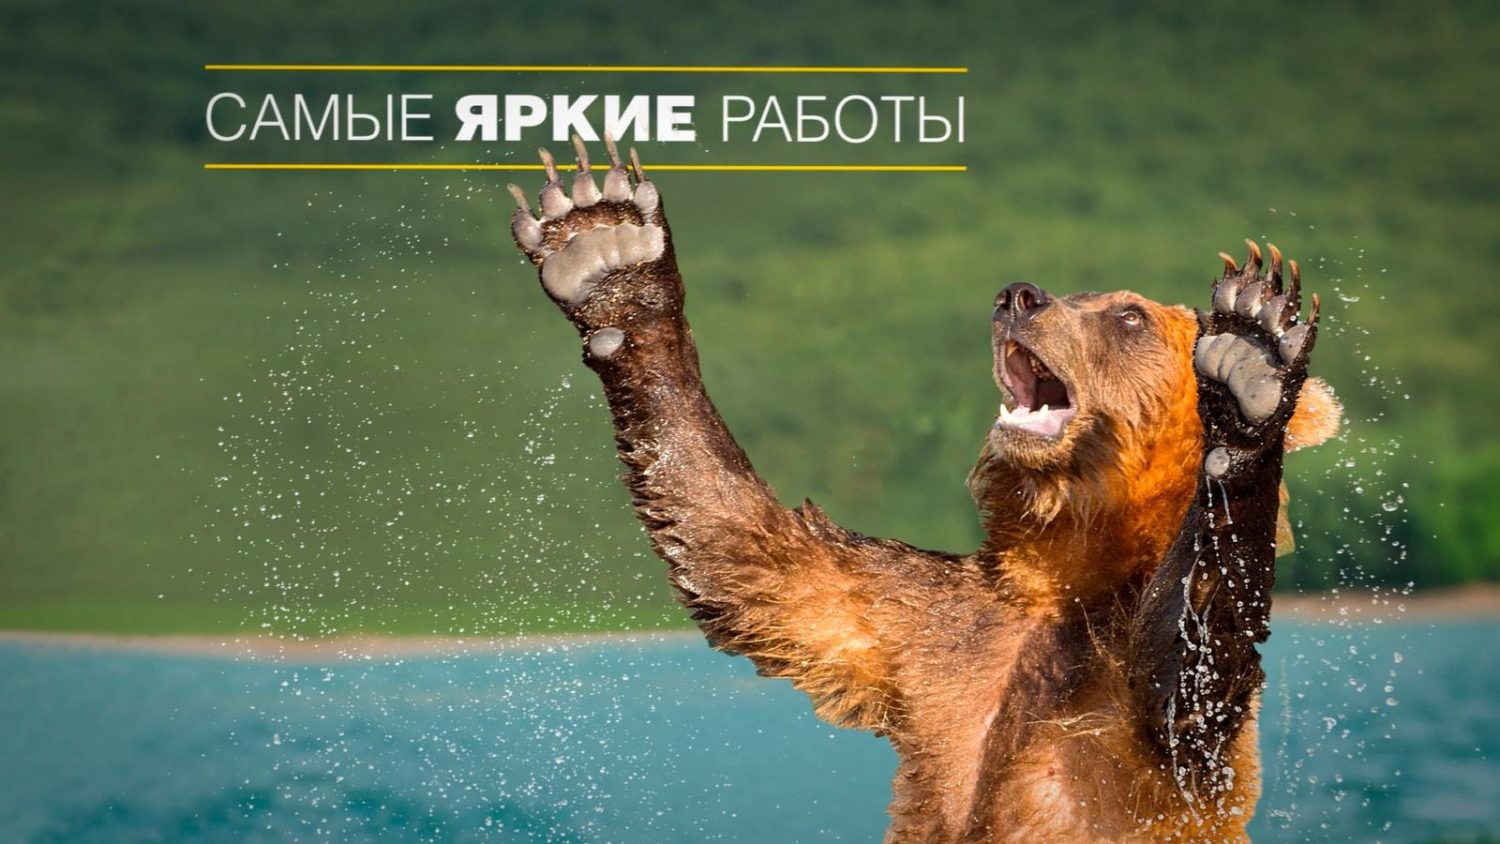 медведь поднял лапы вверх в видеоролика для National Geographic